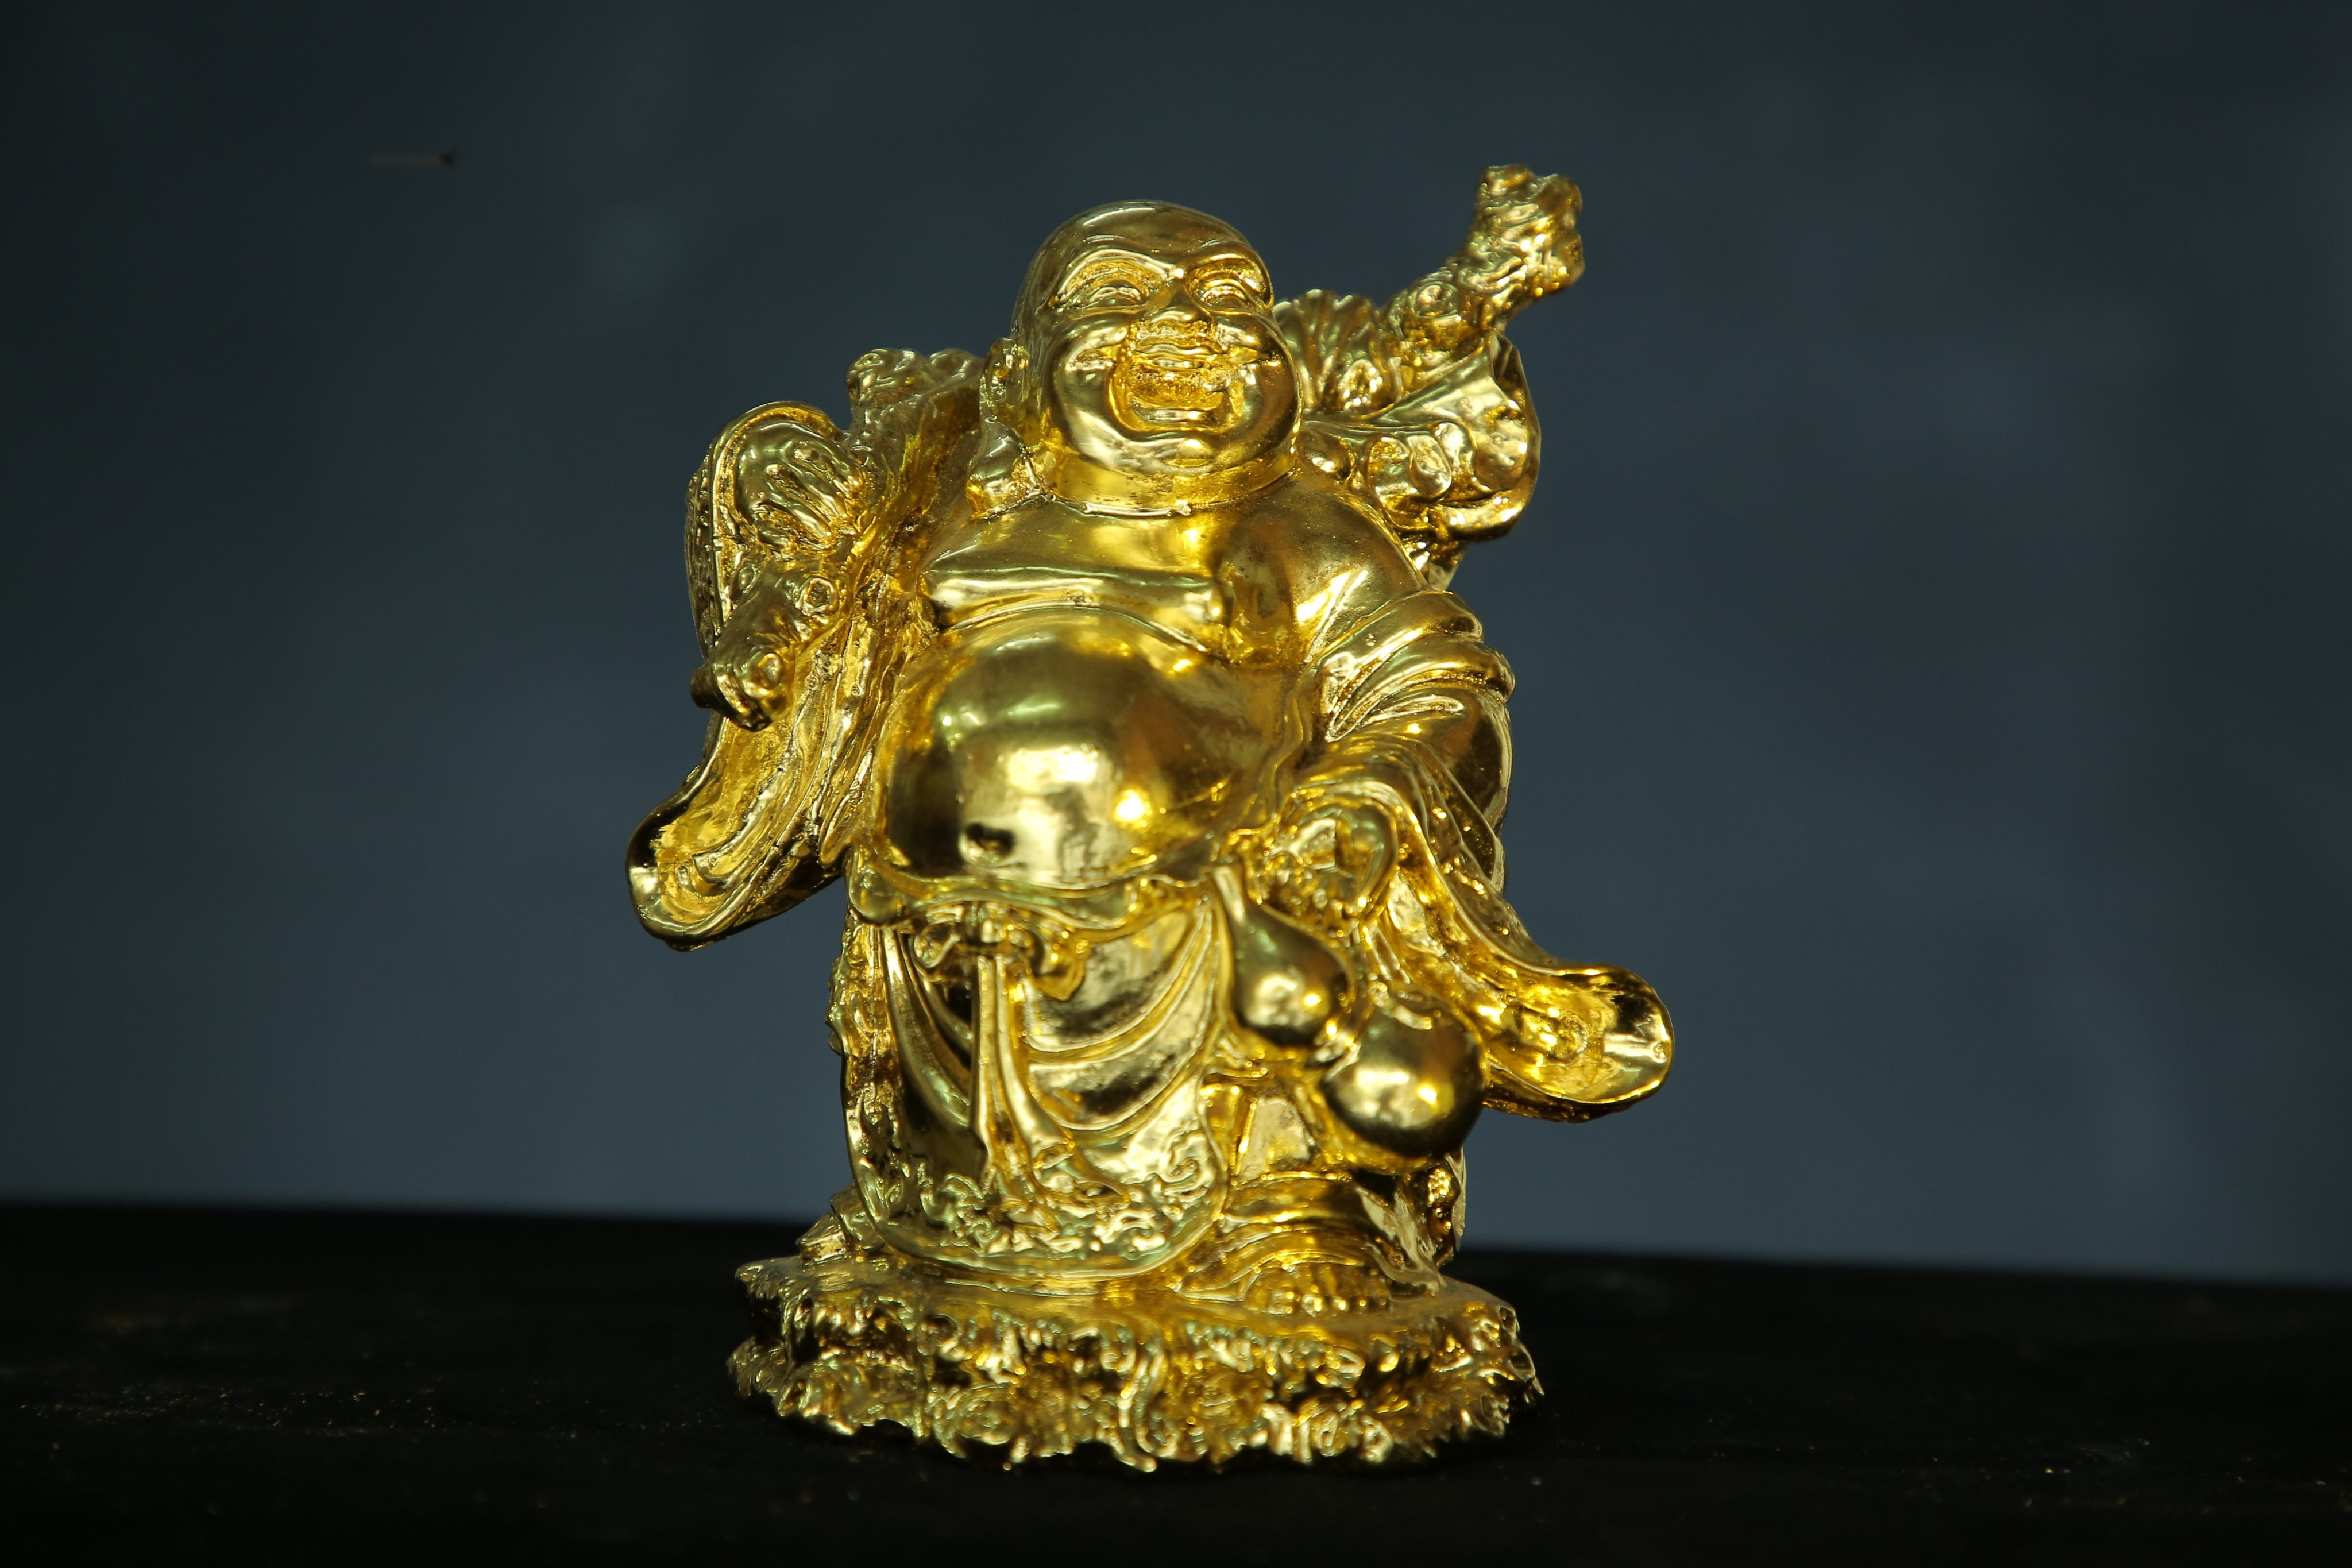 Nghệ nhân cuối cùng của nghề làm tượng đất Táo quân - tượng đồng mạ vàng 